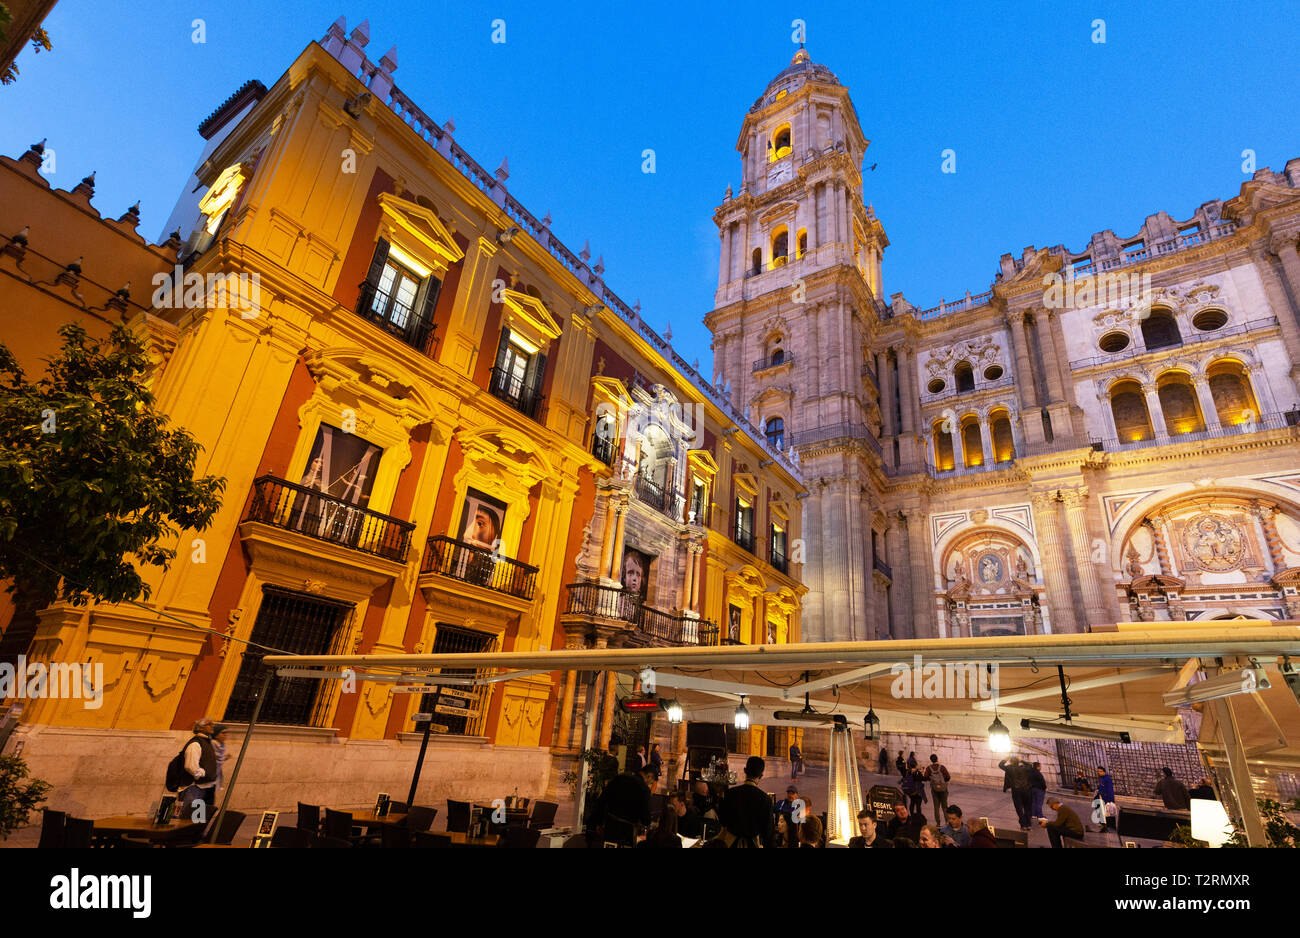 La Catedral de Málaga y el Palacio de los Obispos iluminados durante la noche, visto desde la Plaza del Obispo, el casco antiguo de Málaga, Andalucía, España Foto de stock